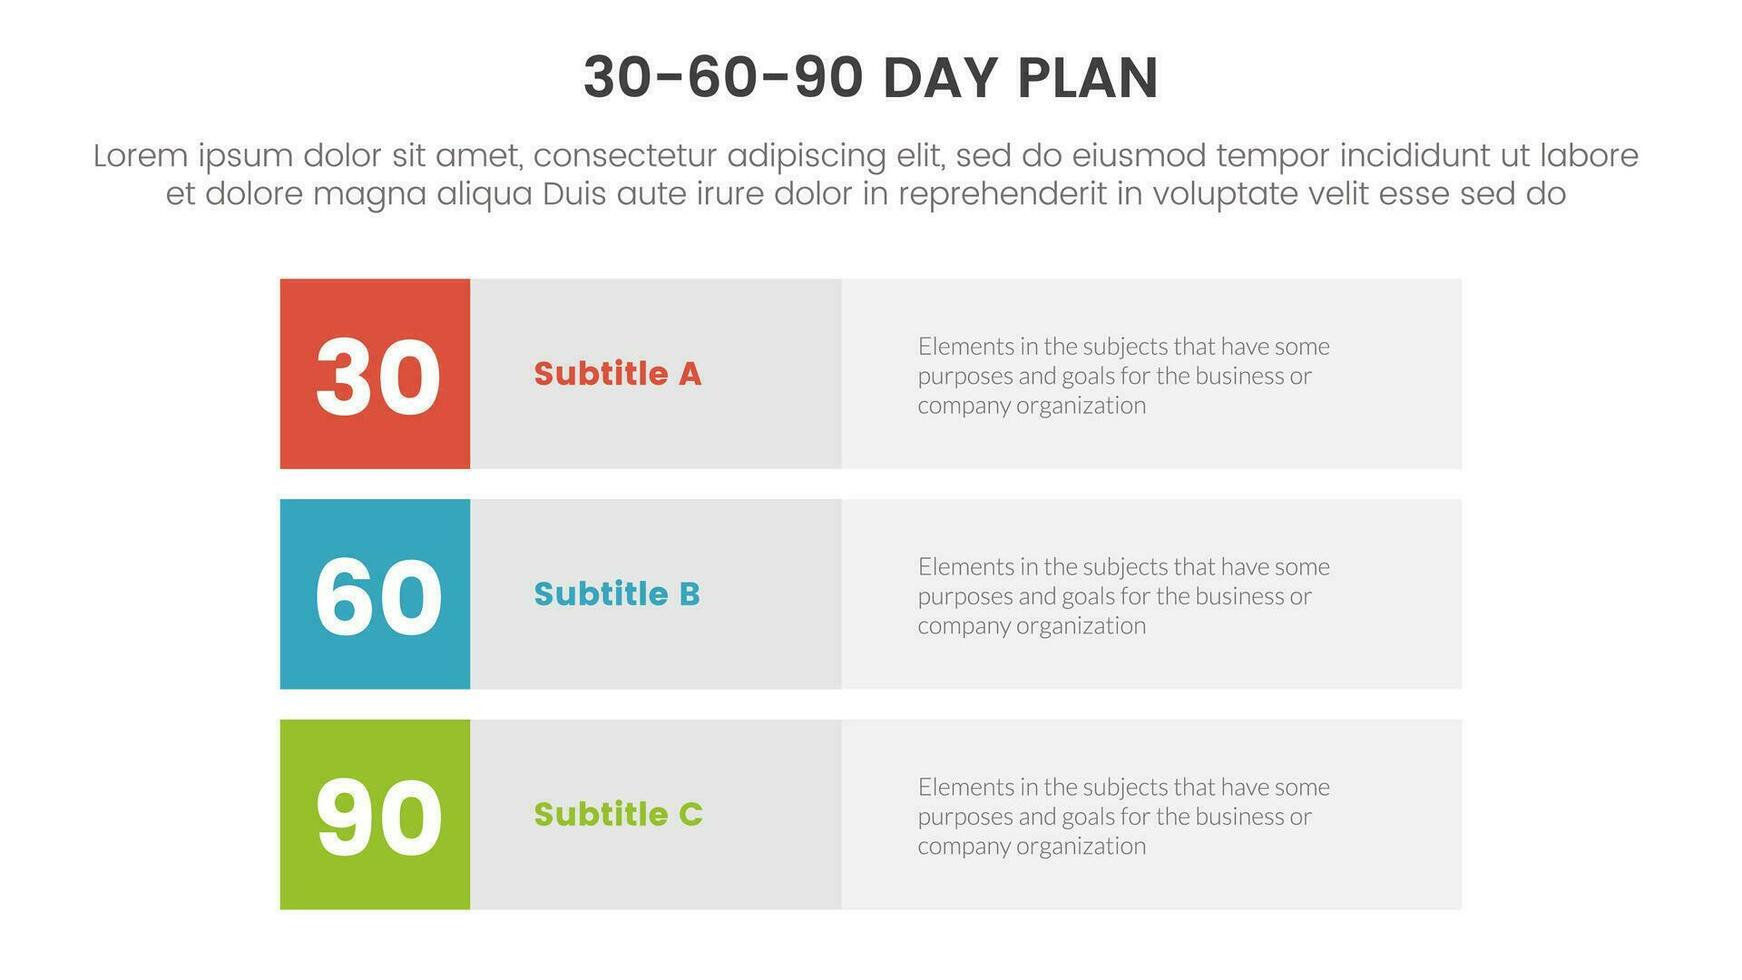 30-60-90 journée plan la gestion infographie 3 point étape modèle avec 3 bloquer rangée rectangle contenu concept pour faire glisser présentation vecteur